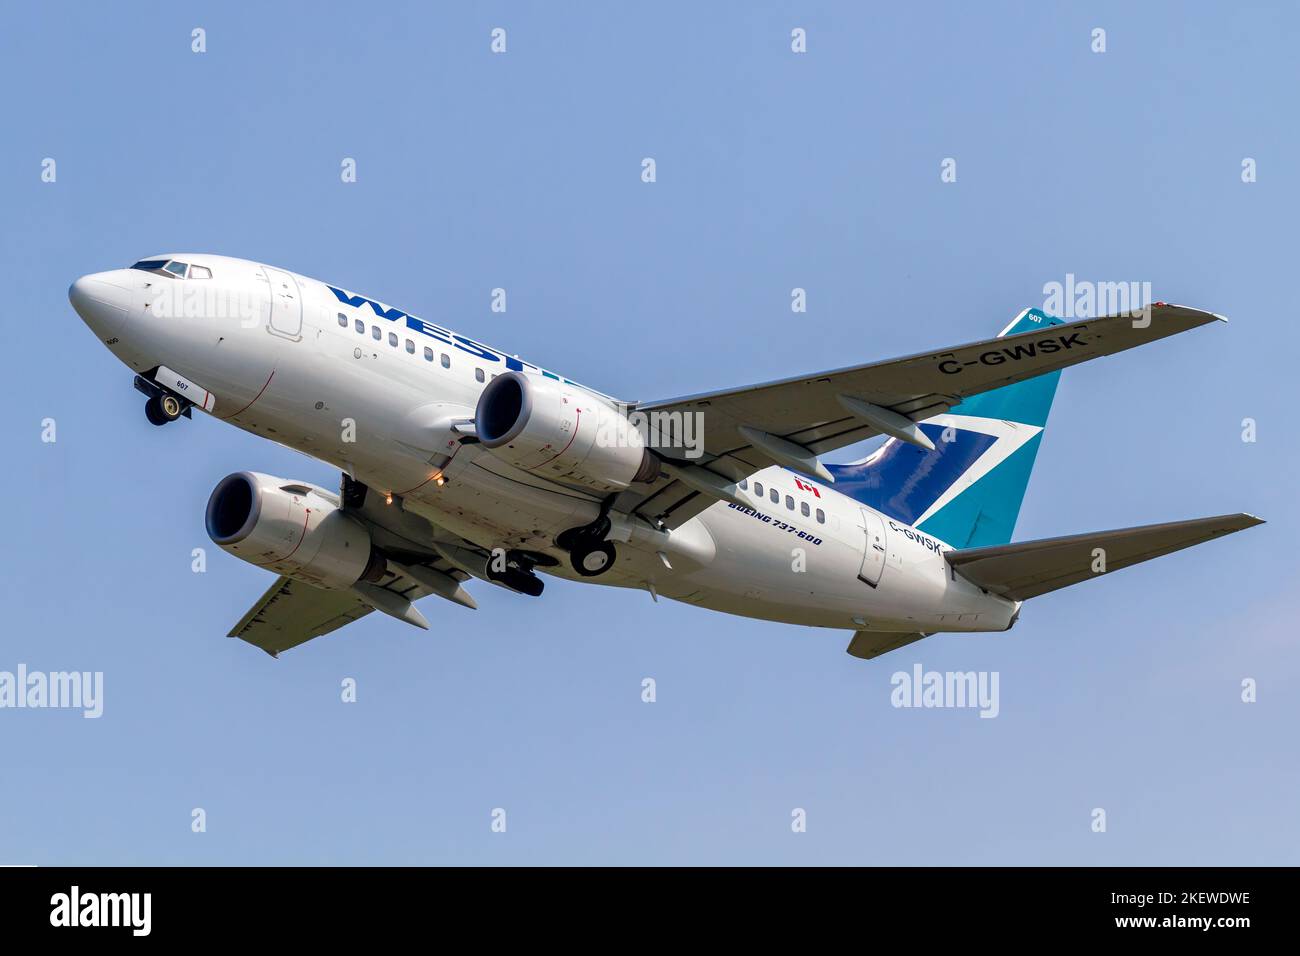 Un avion de ligne de passagers commercial WestJet 737-600 peu après le décollage de l'aéroport international de London à London, Ontario, Canada. Banque D'Images